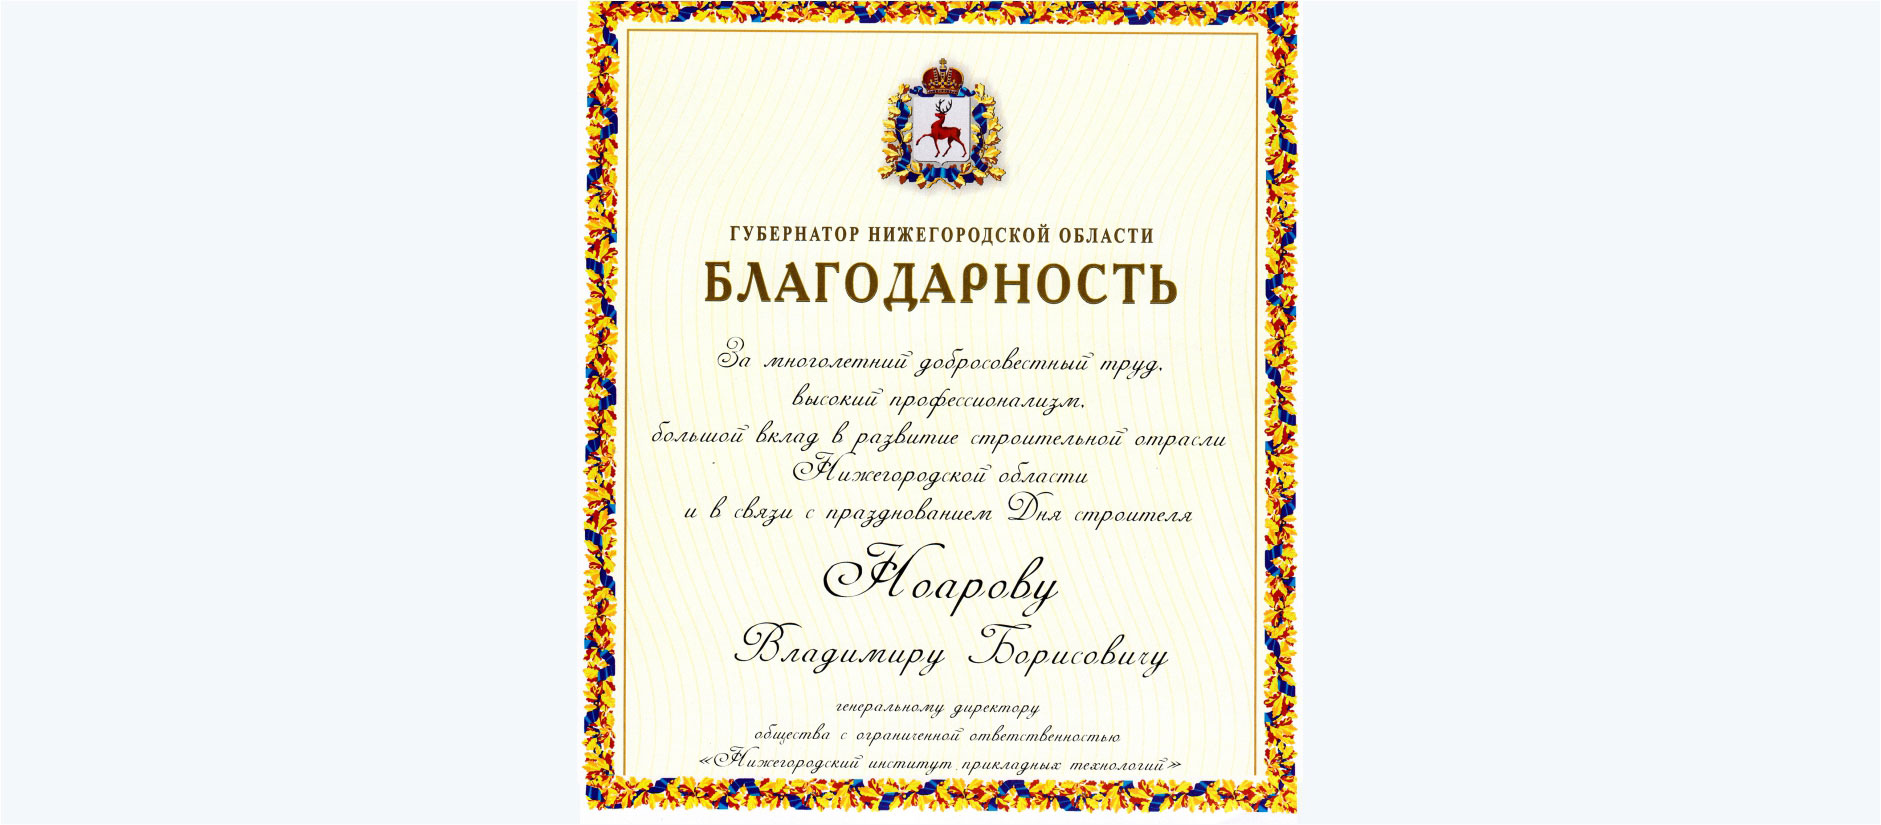 Gleb Nikitin, Governor of the Nizhny Novgorod Region, awarded a letter of appreciation to Vladimir Noarov, General Director of NNIAT LLC.